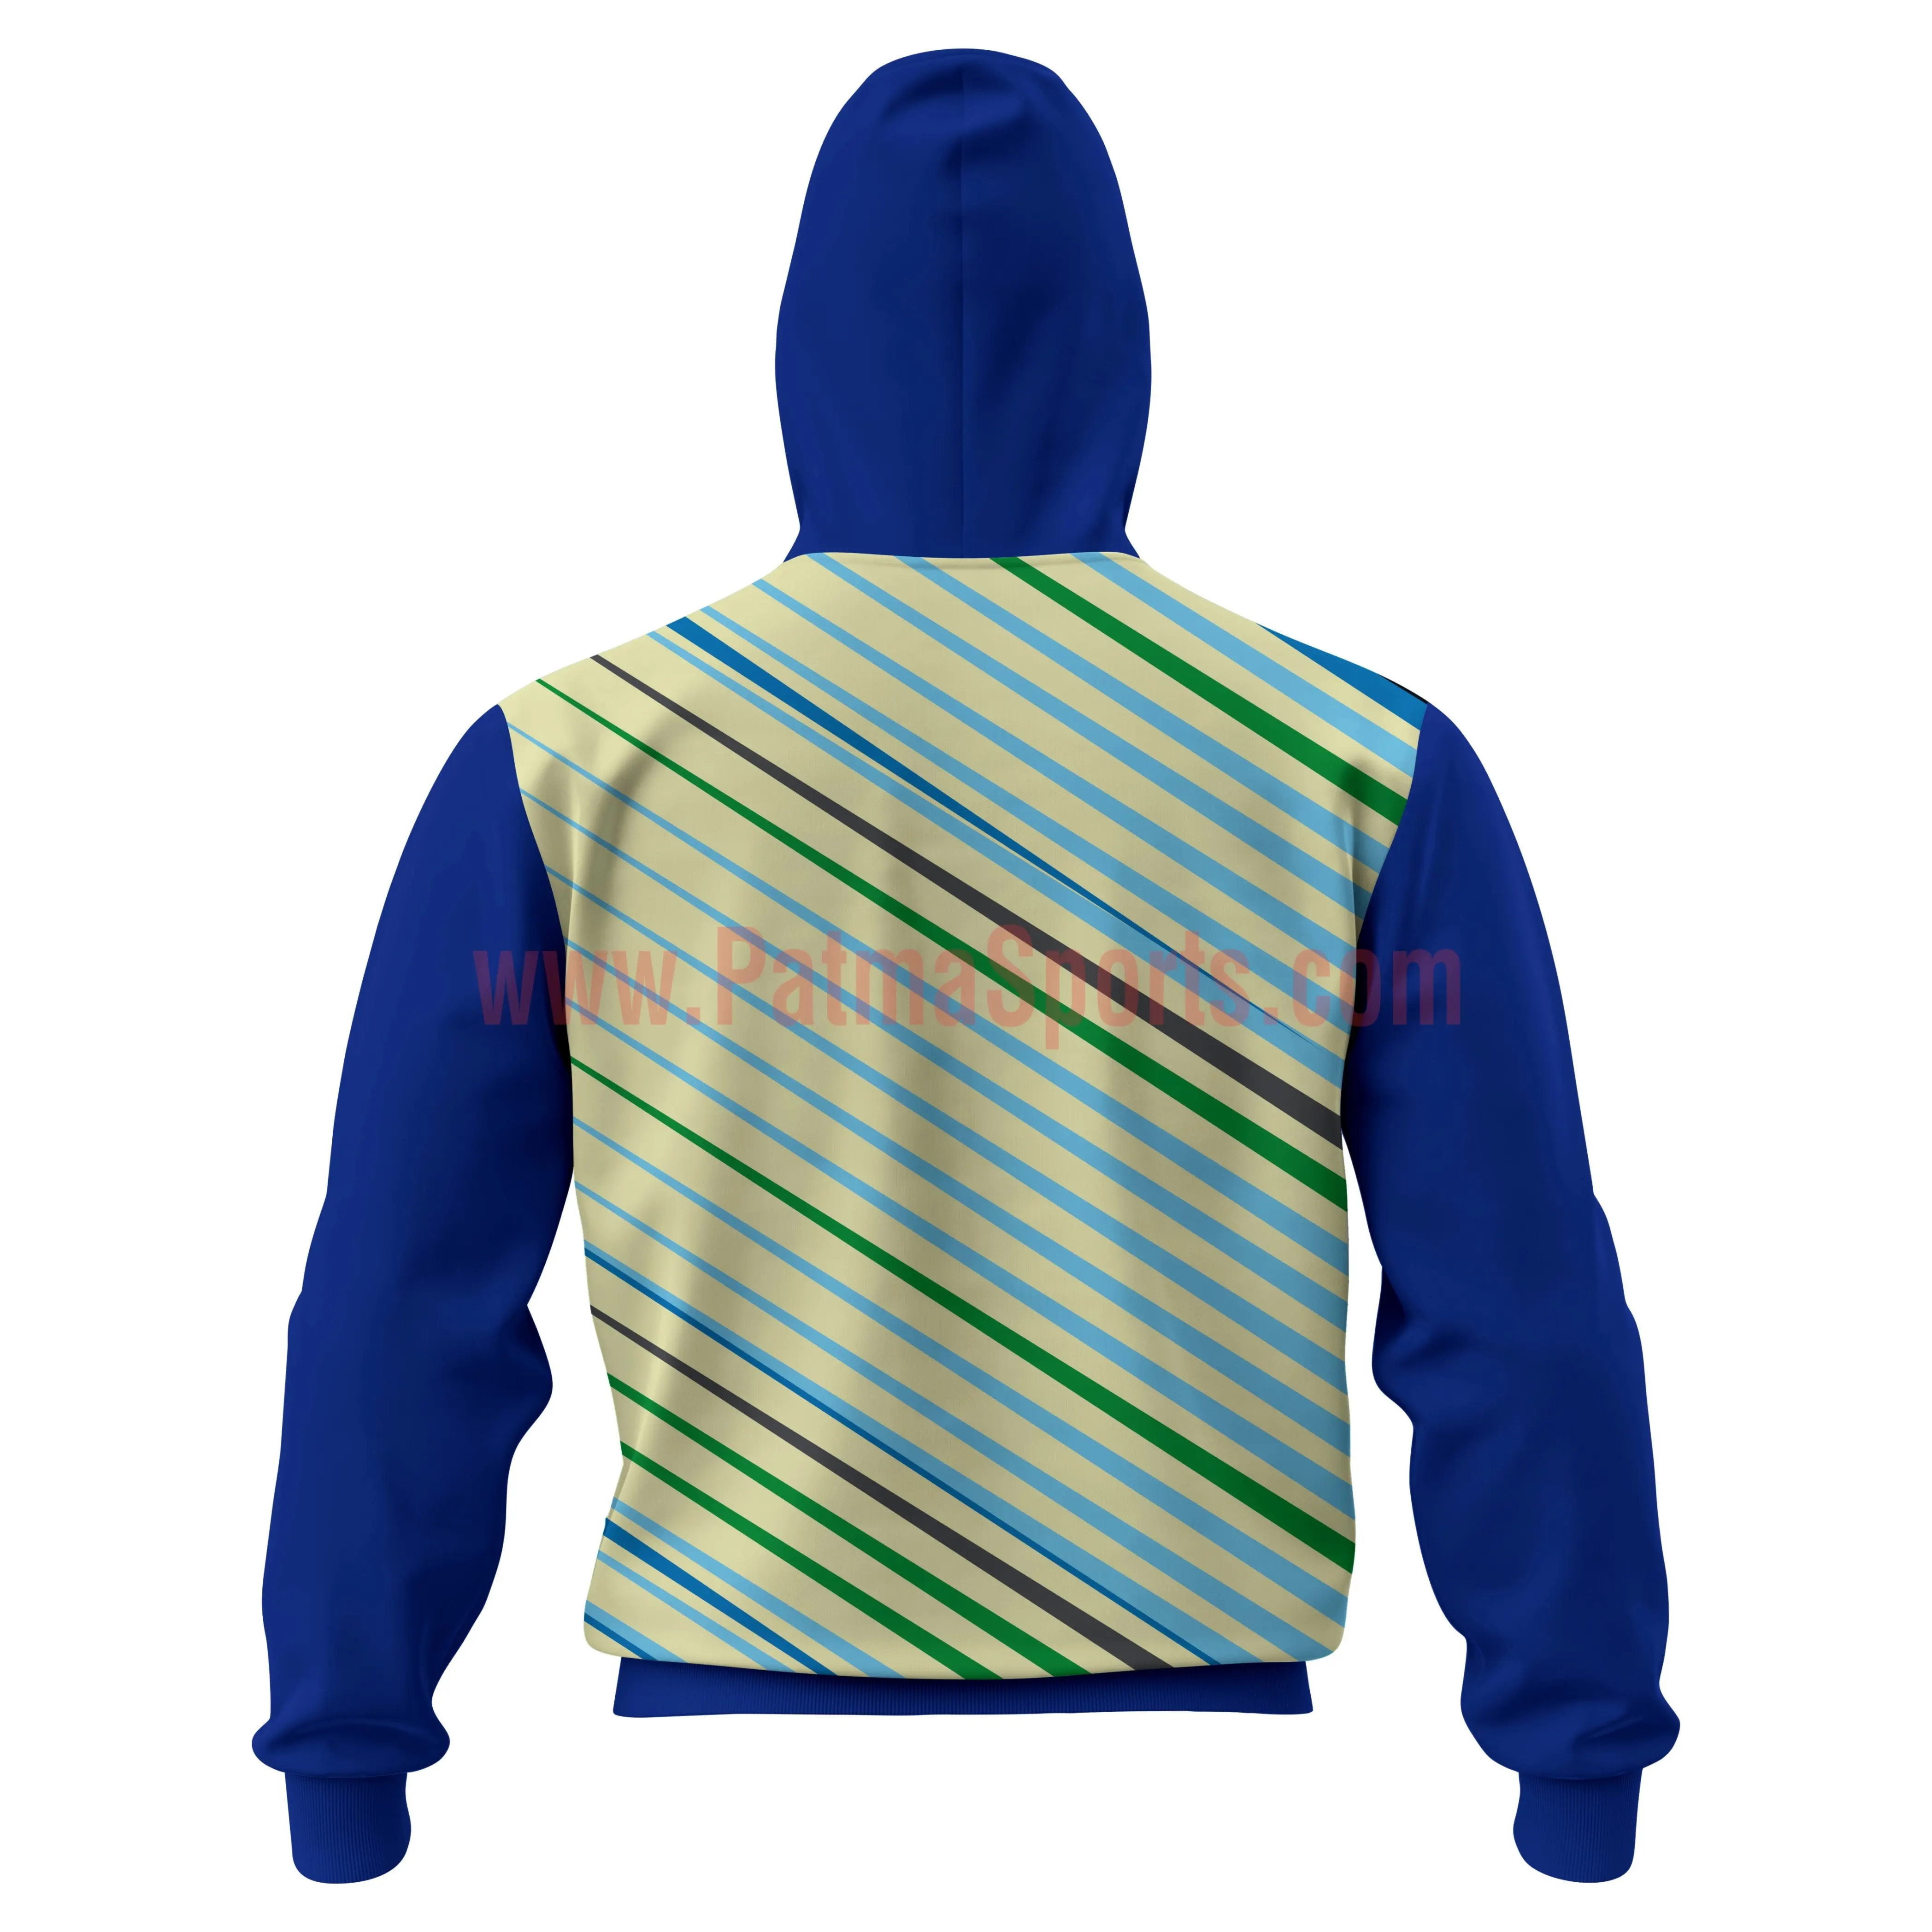 Preiswert komplett individueller Sweatshirt Baumwolle Fleece Hoodie mit Ihrem individuellen Design, Tags, Etiketten, Chenille Stickerei trendig